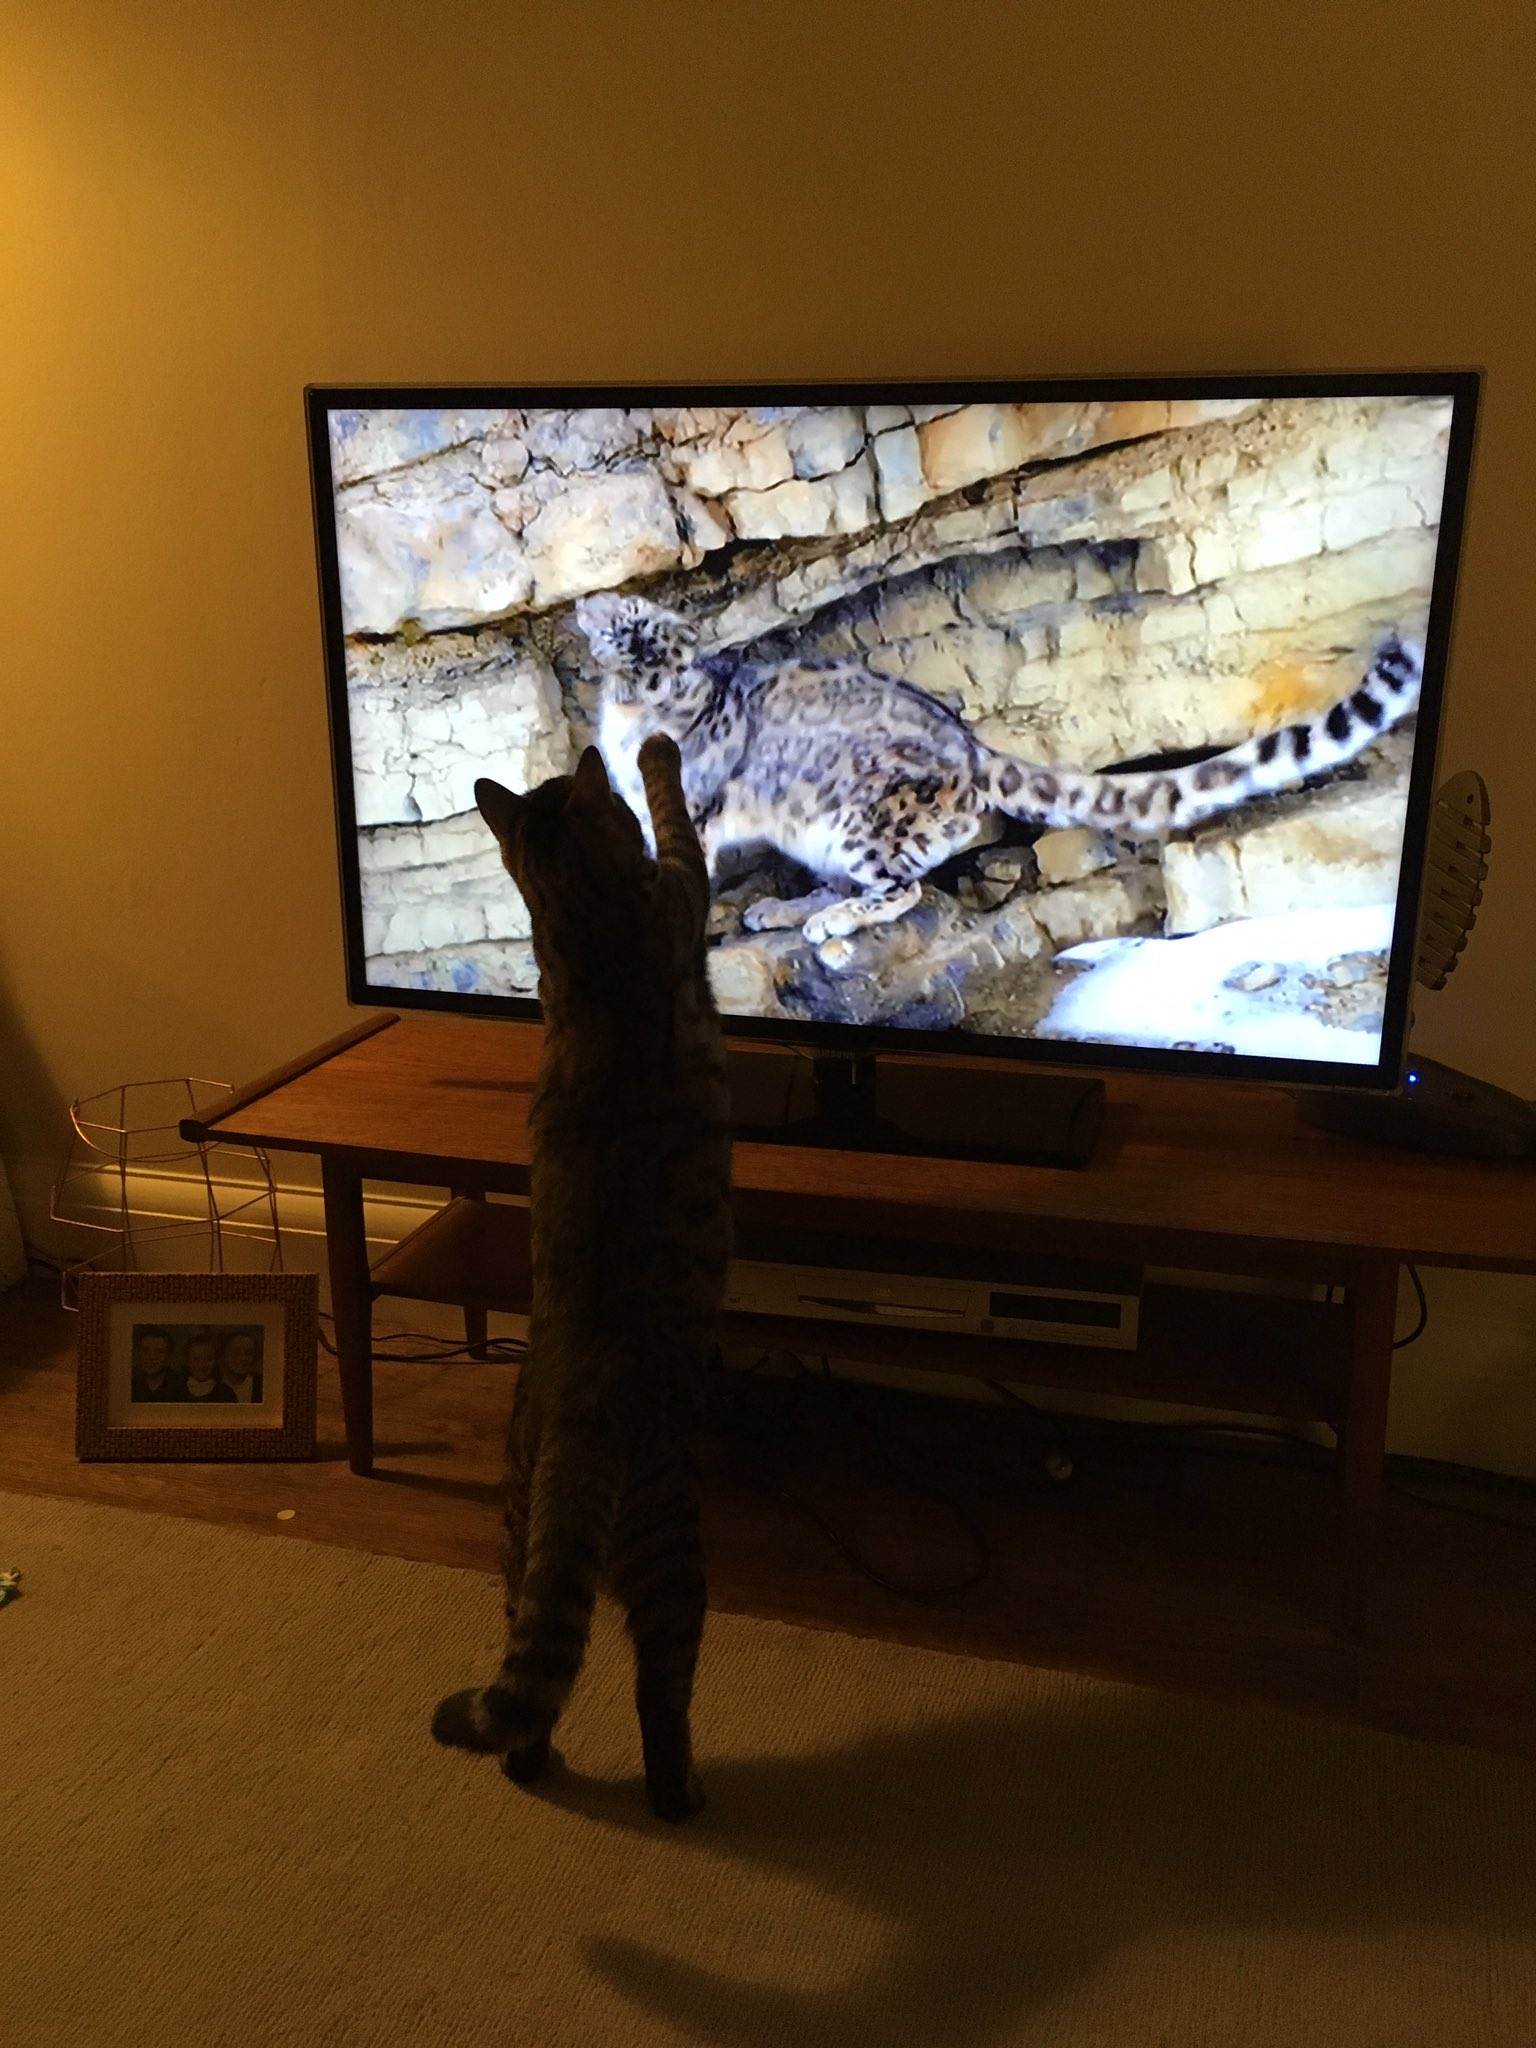 Почему кошки не любуются видом из окна, а собаки не смотрят старые телевизоры? осмысленно ли животные смотрят телевизор? кот любит смотреть телевизор